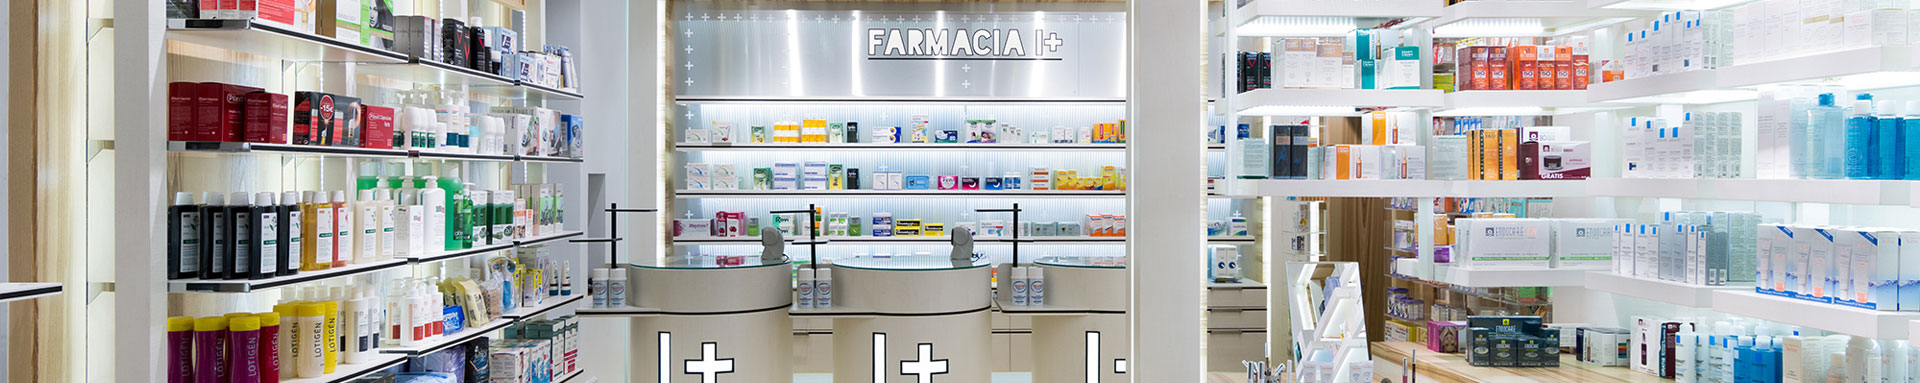 Foto mostradores farmacia I+